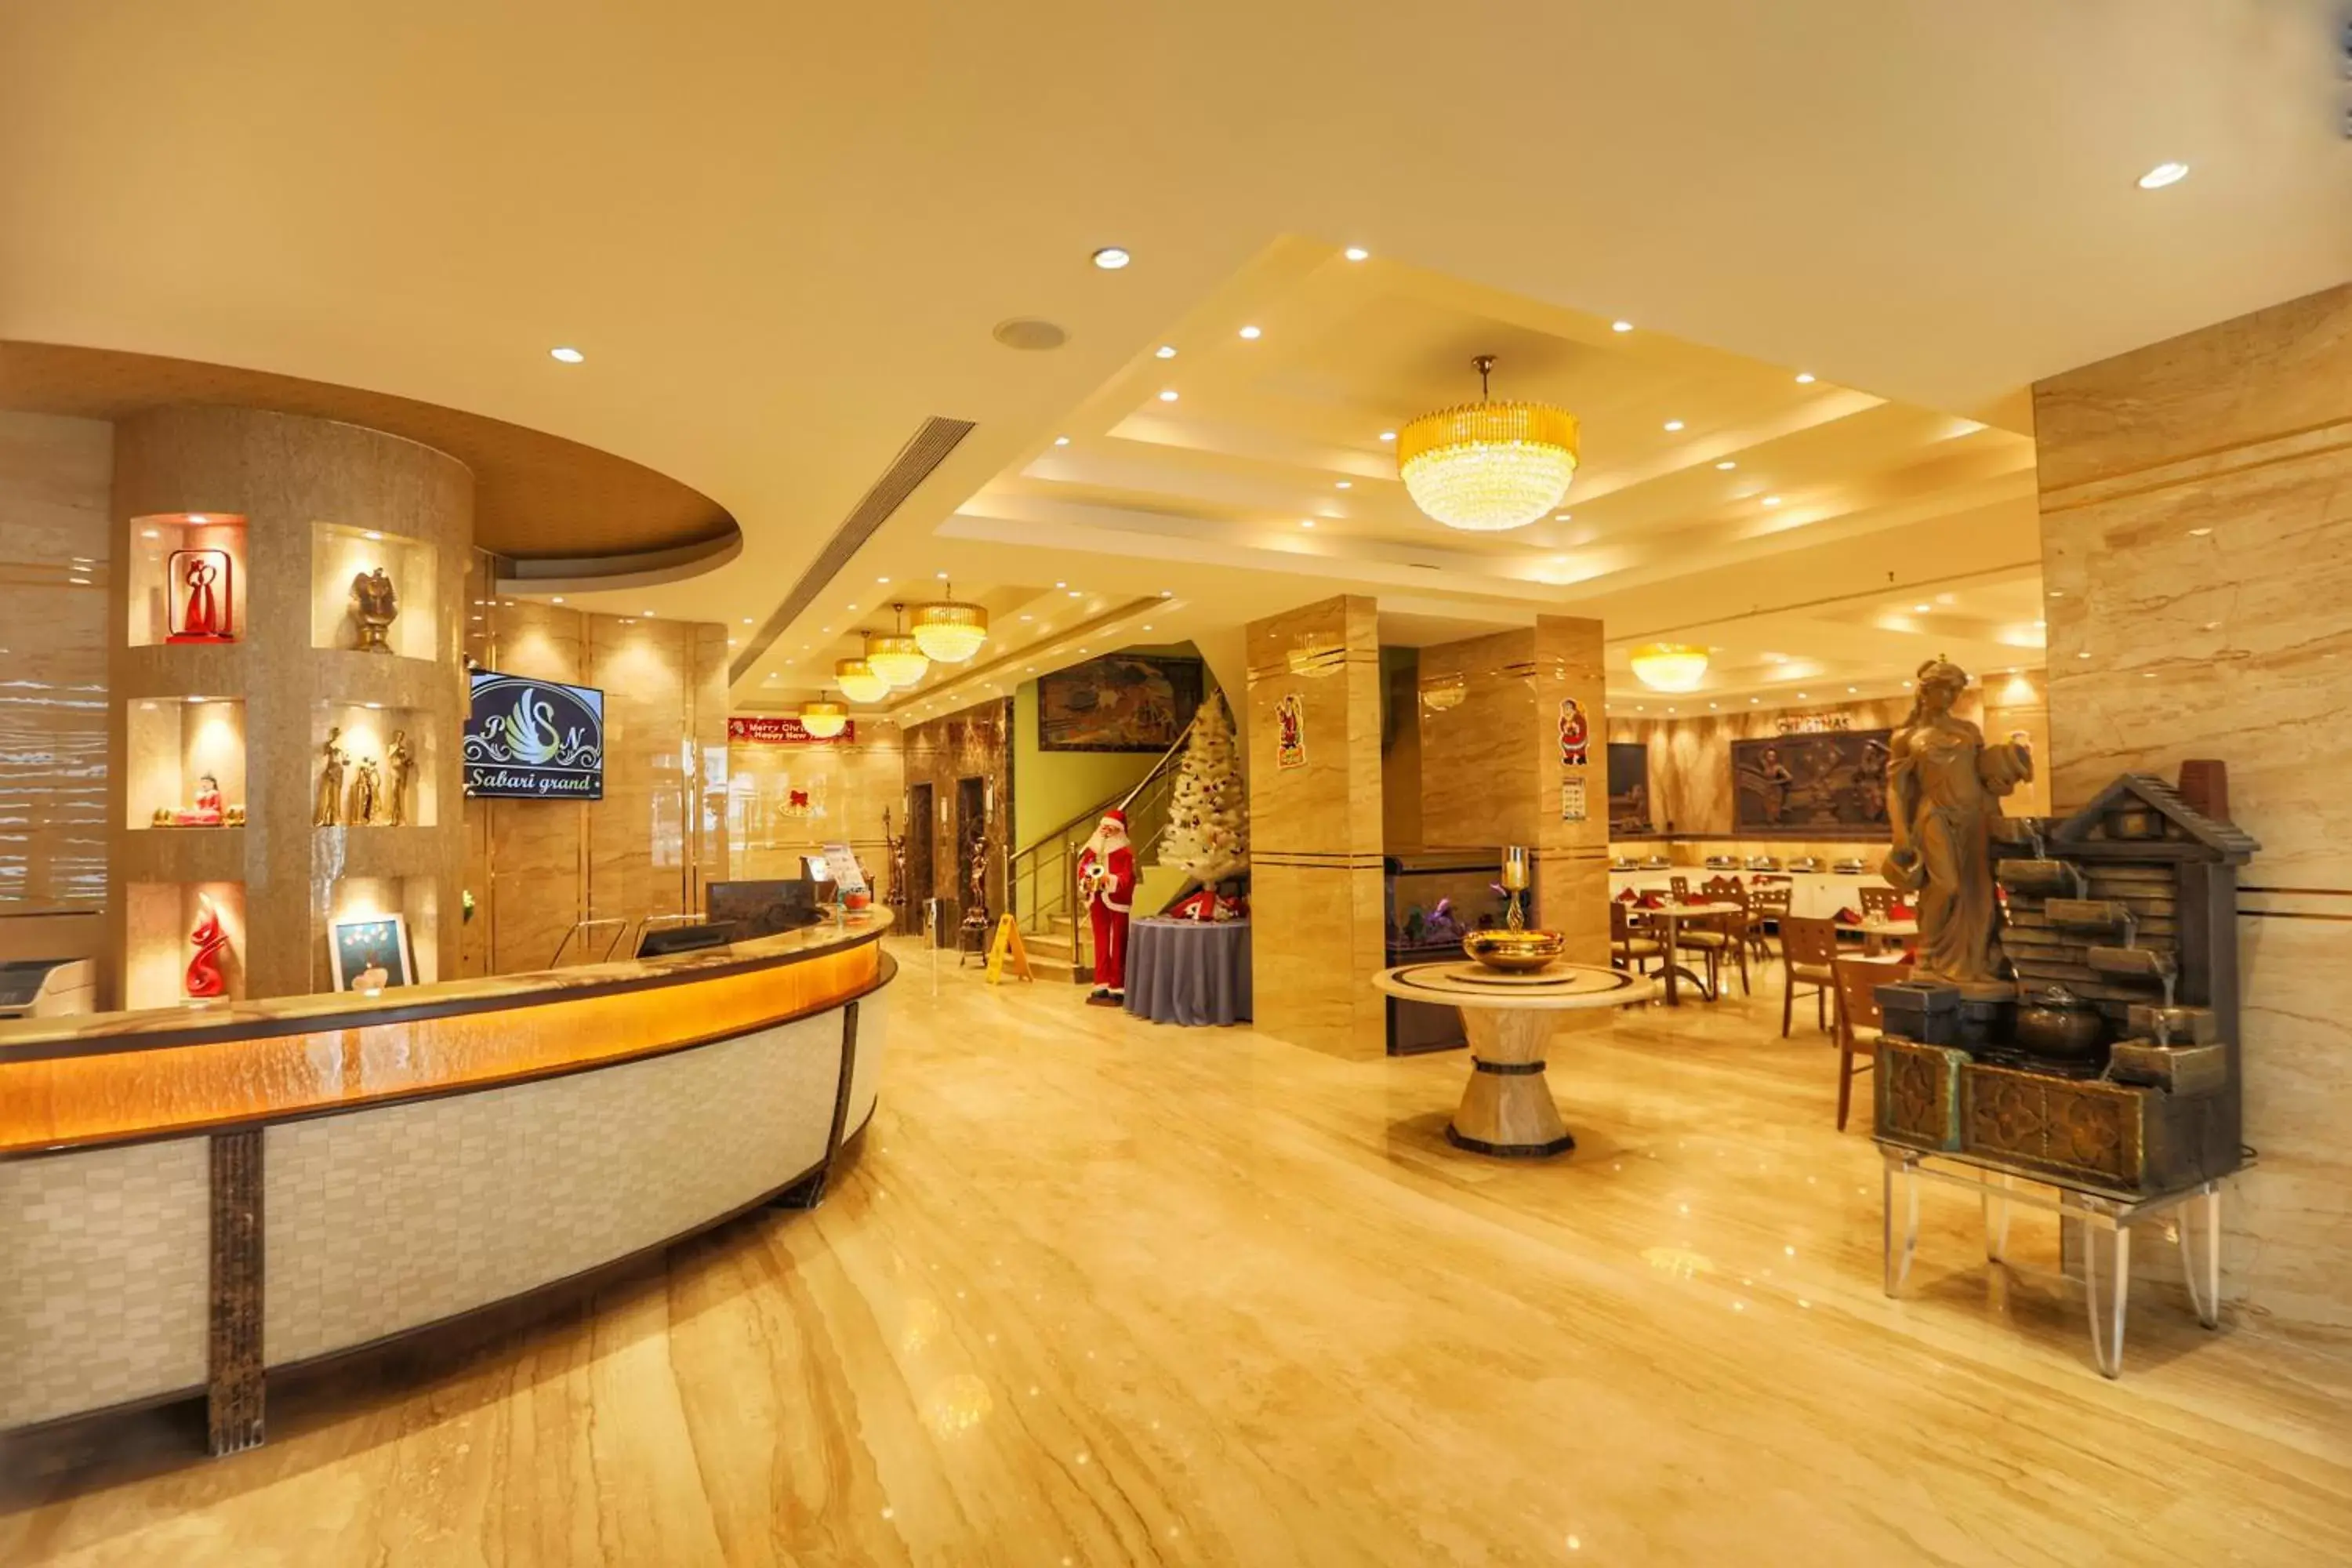 Lobby or reception, Lobby/Reception in Quality Inn Sabari